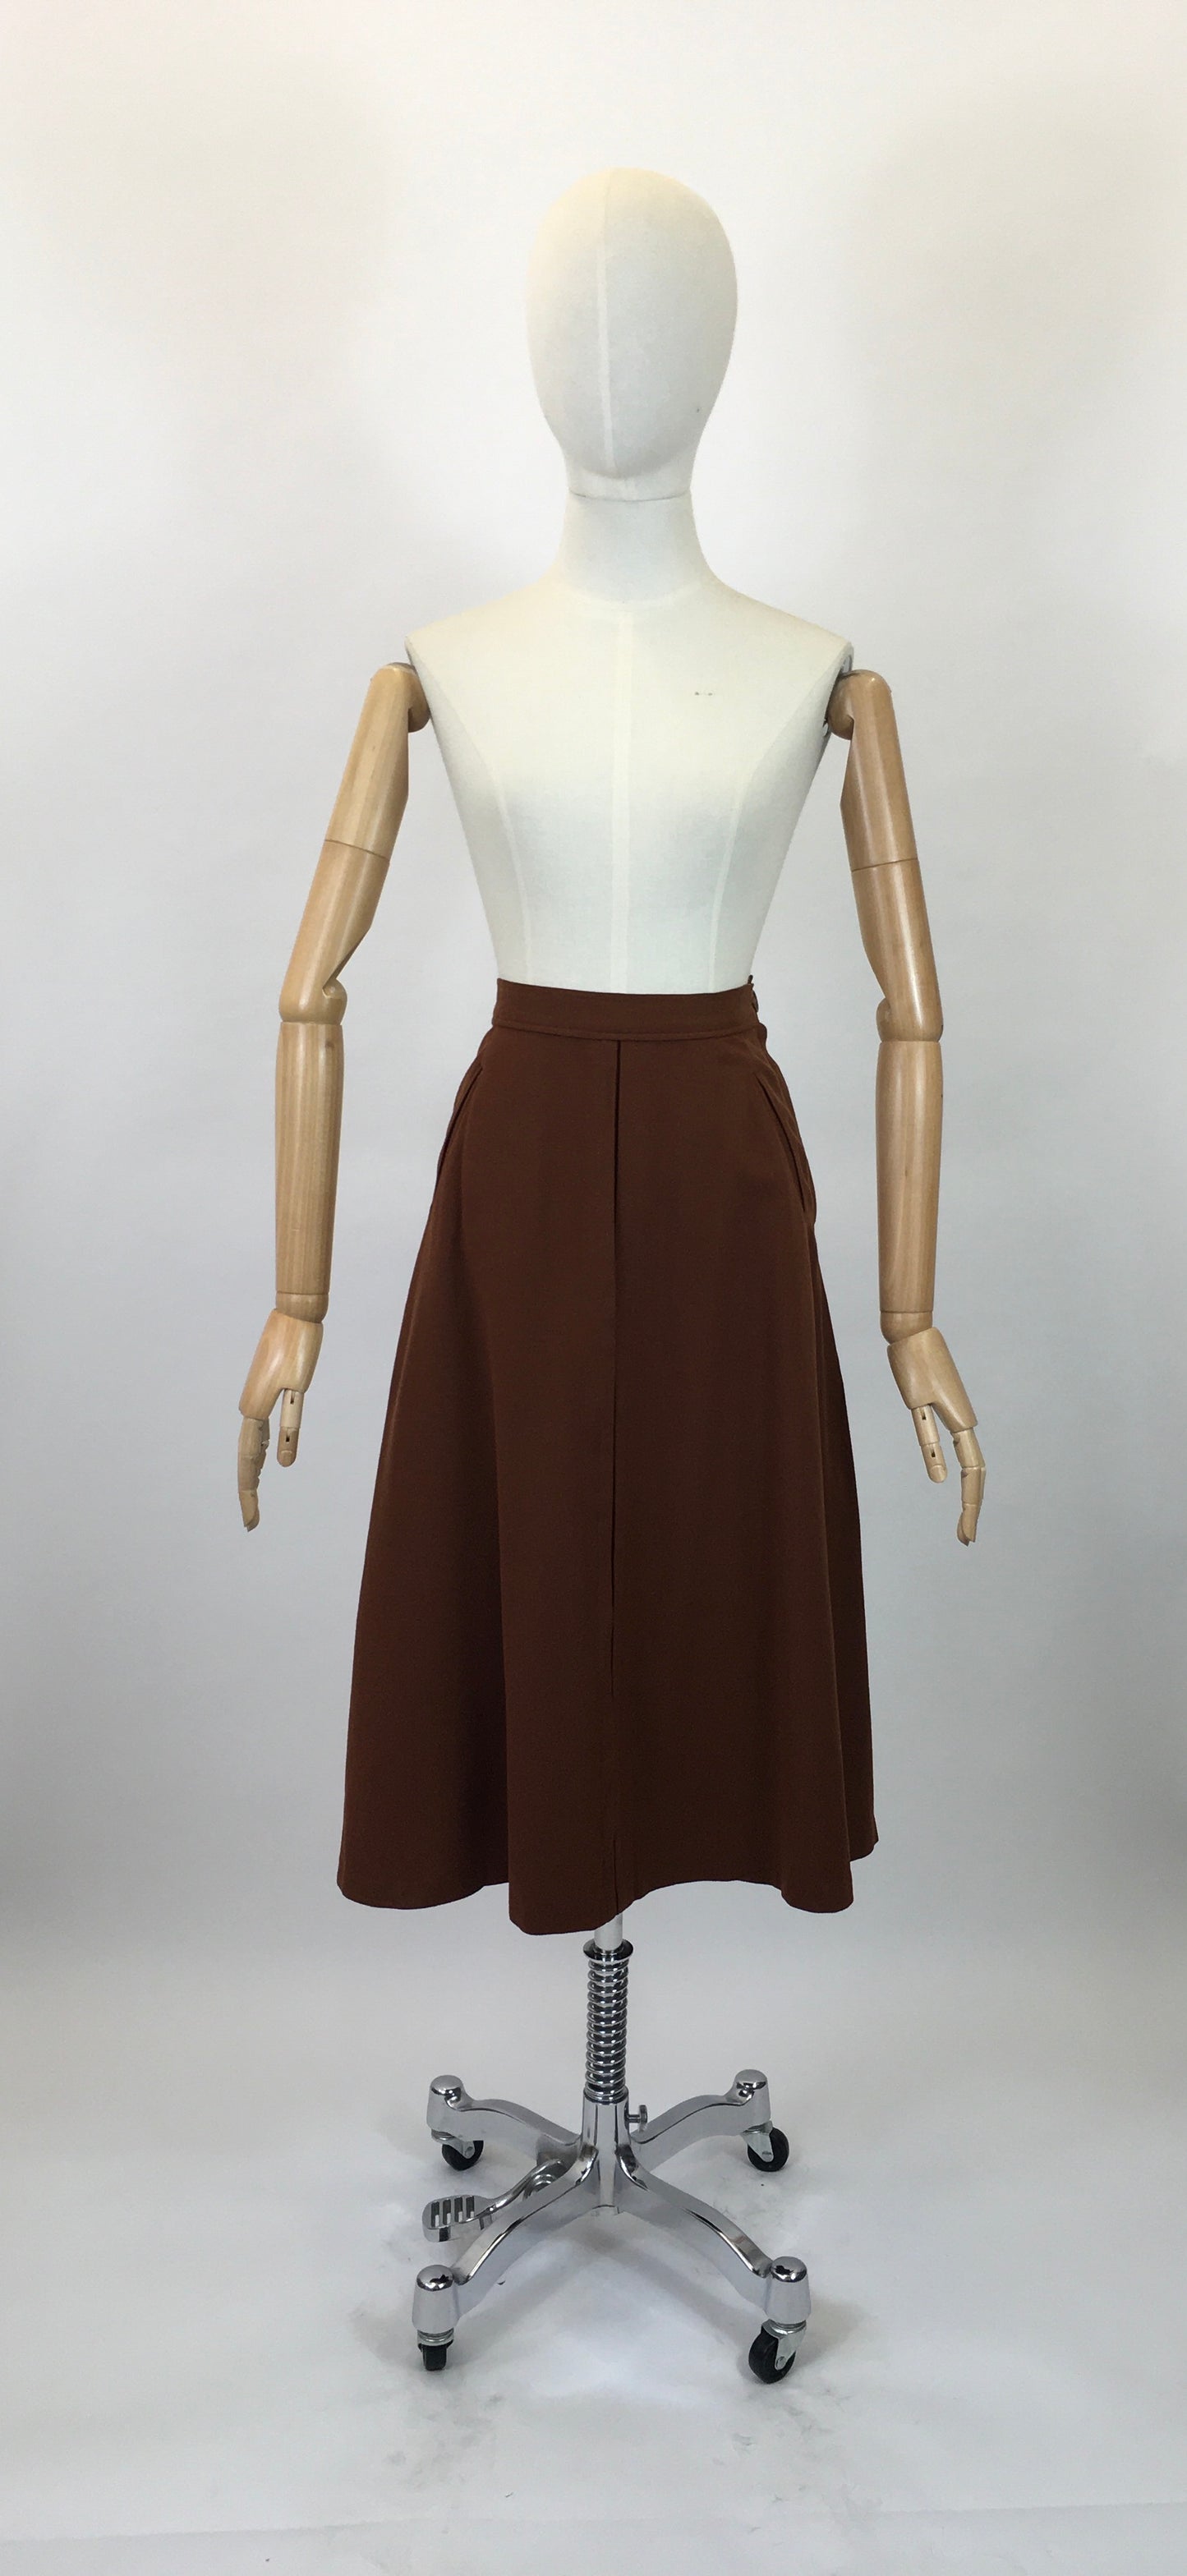 Original 40’s Woollen Skirt - in a warm Chestnut Brown